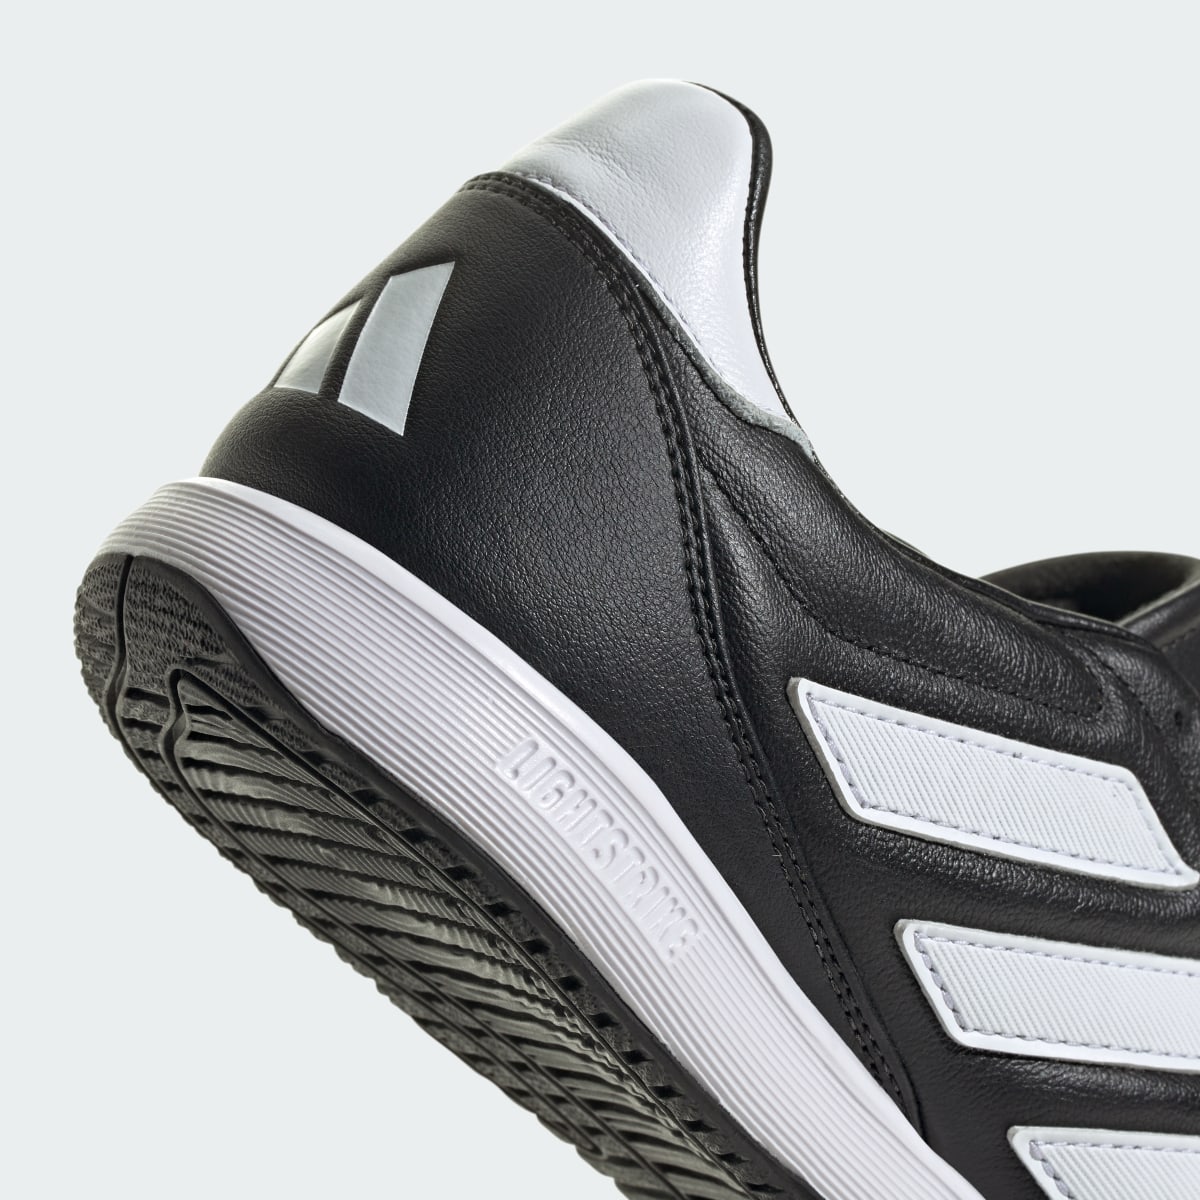 Adidas Copa Gloro Indoor Boots. 10